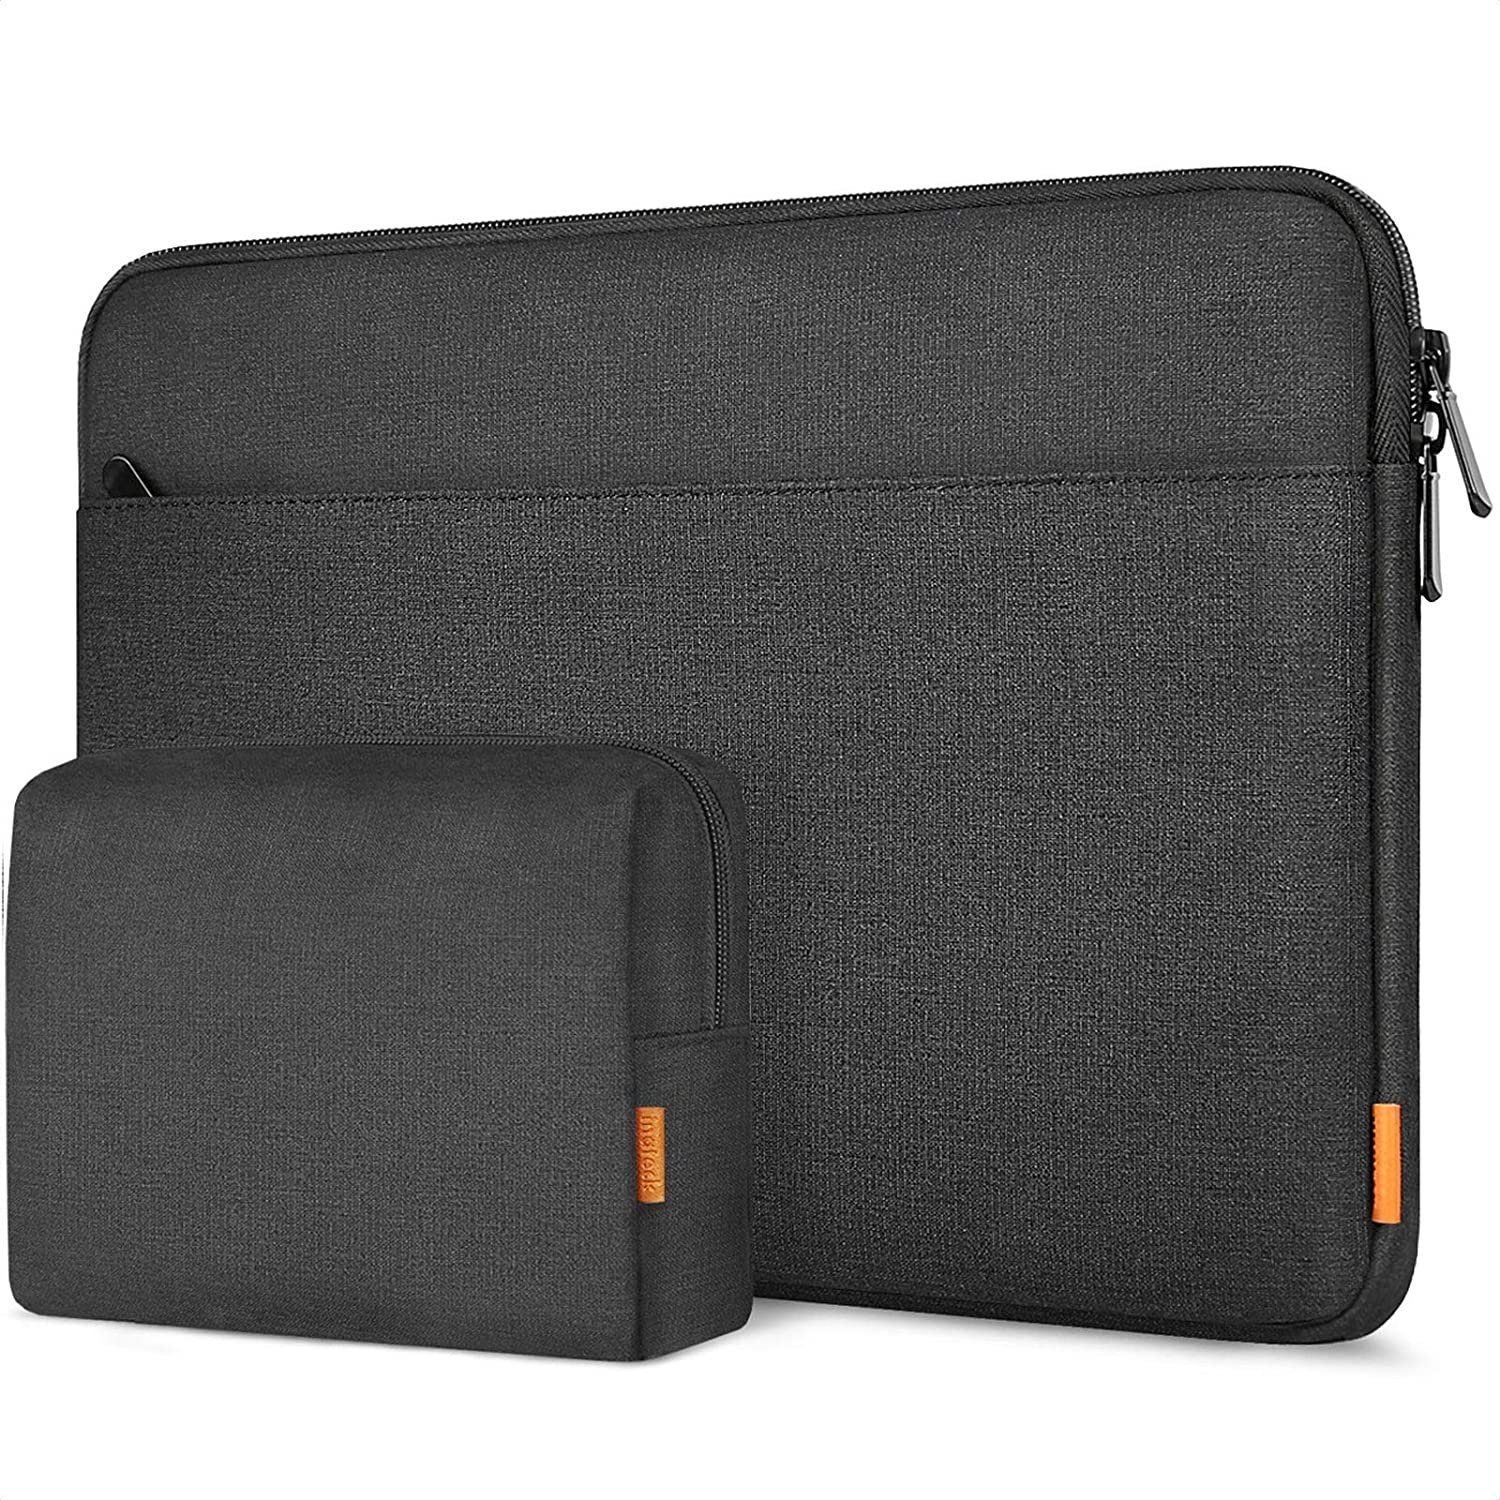 Trage Tasche Etui Beutel Hülle für hp 14 " 15.6 " hp Pavilion Notebook Laptop 